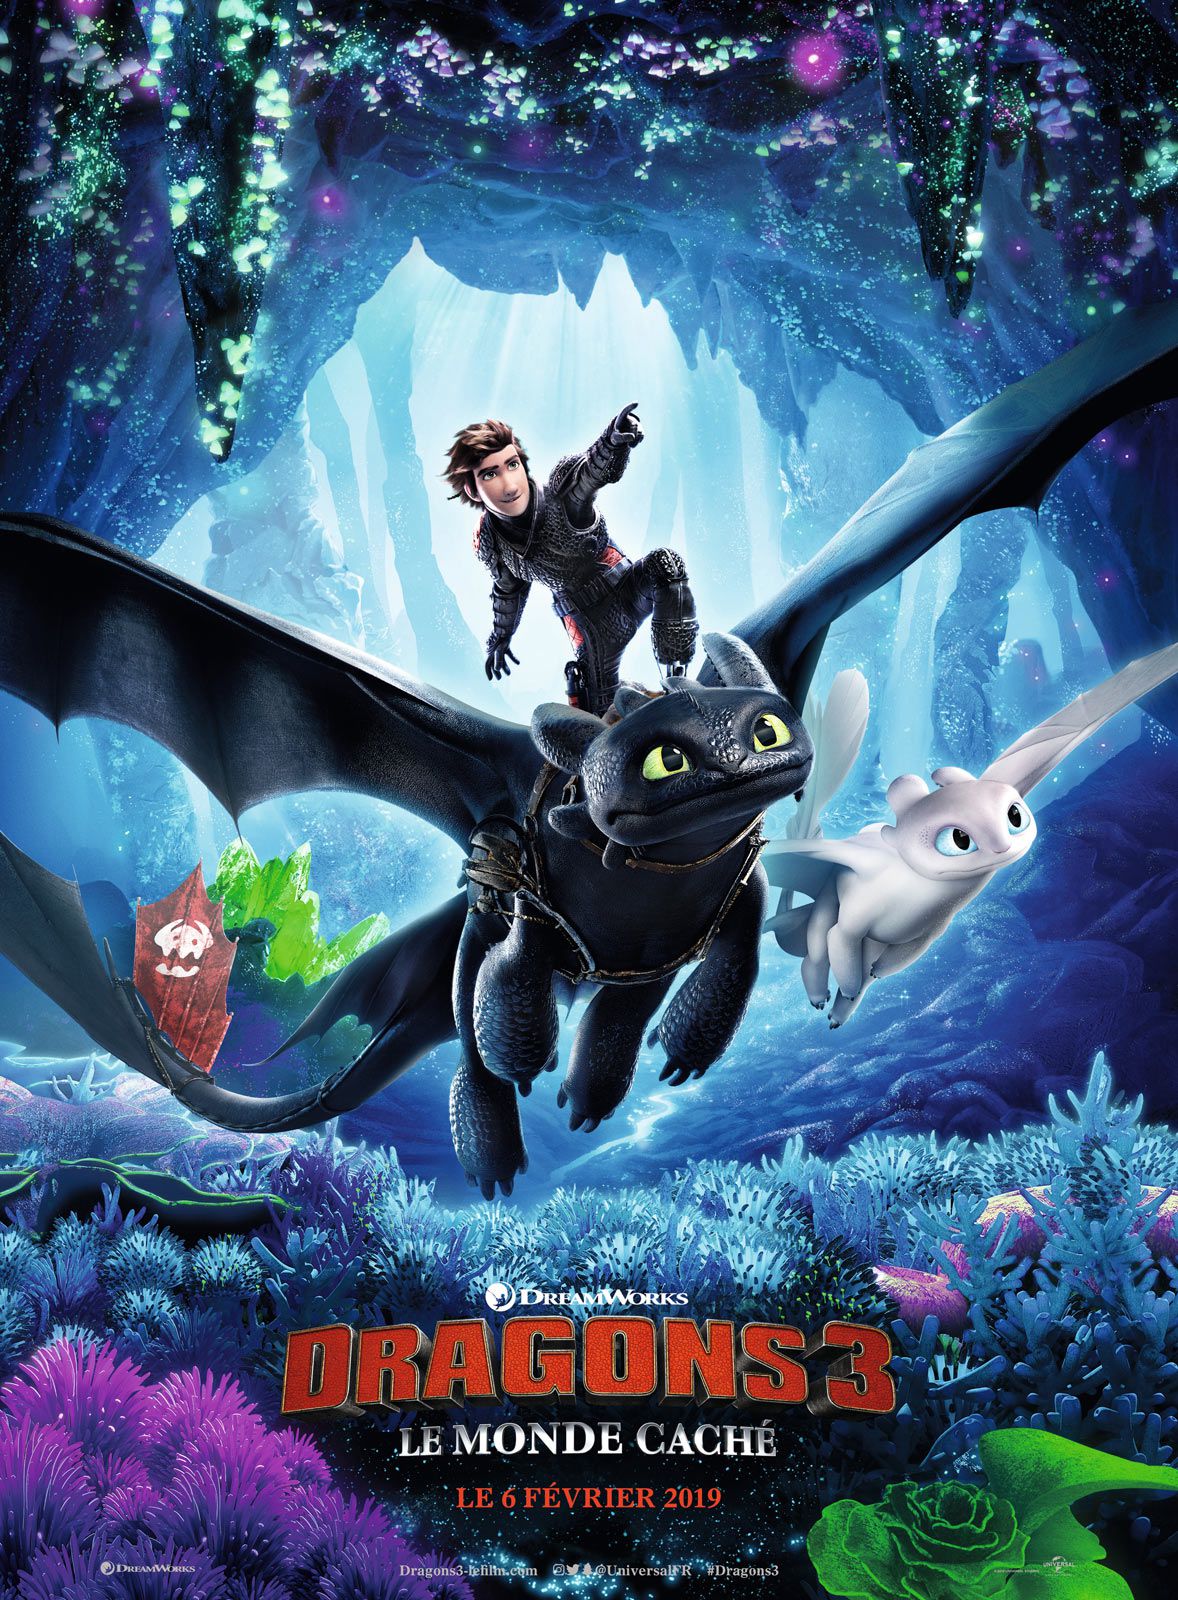 Dragons 3 : Le Monde caché - Long-métrage d'animation (2019) streaming VF gratuit complet